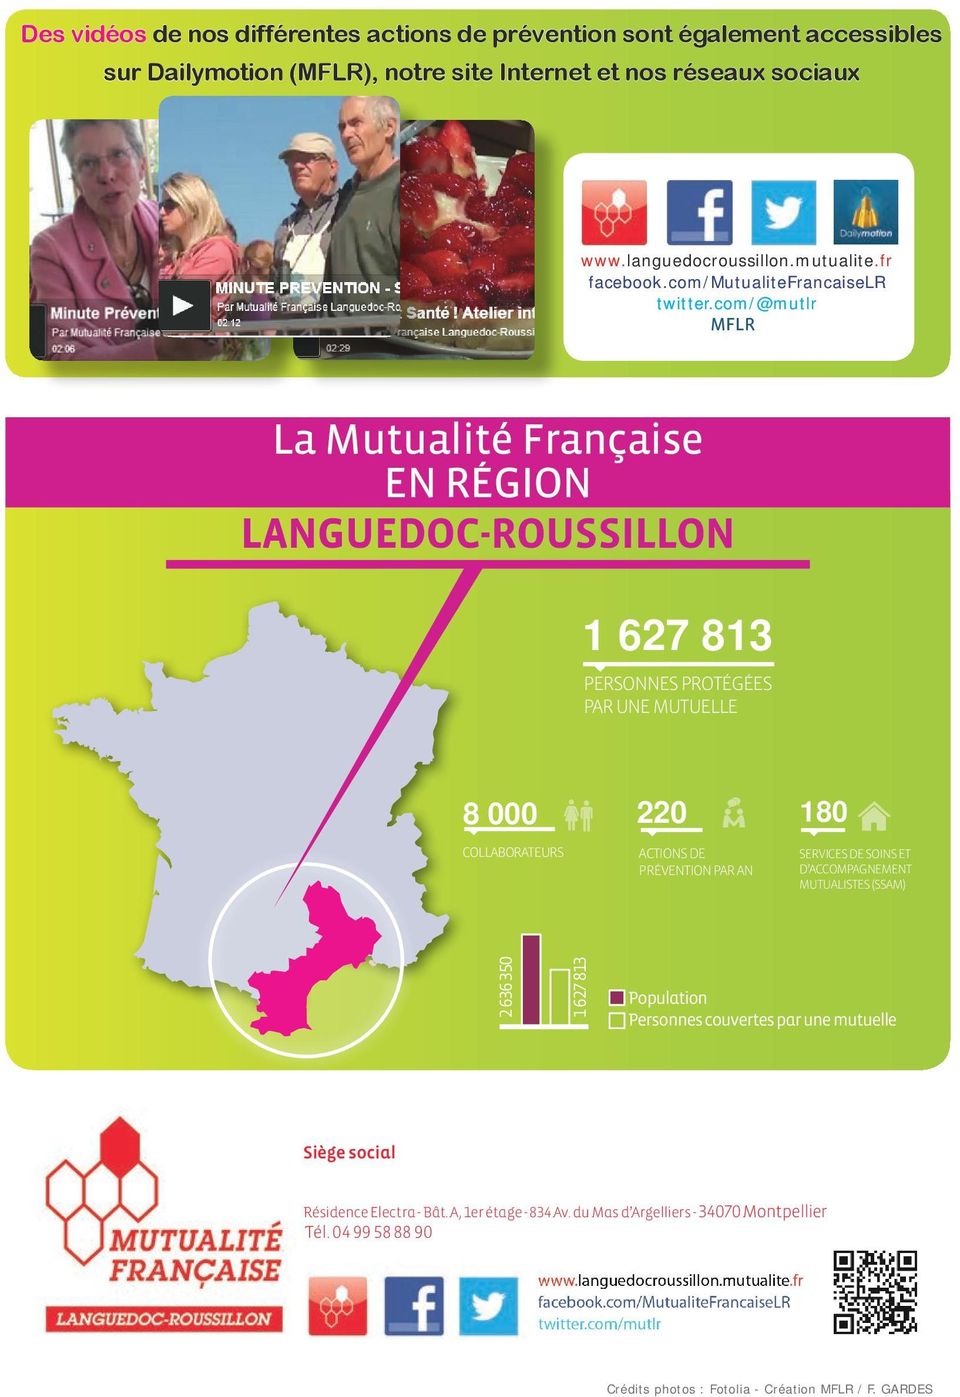 com/@mutlr MFLR La Mutualité Française EN Région LANGUEDOC-ROUSSILLON 1 627 813 y PERSONNES PROTéGéES PAR UNE MUTUELLE 8 000 y COLLABORATEURS 220 y actions DE PRéVENTION PAR AN